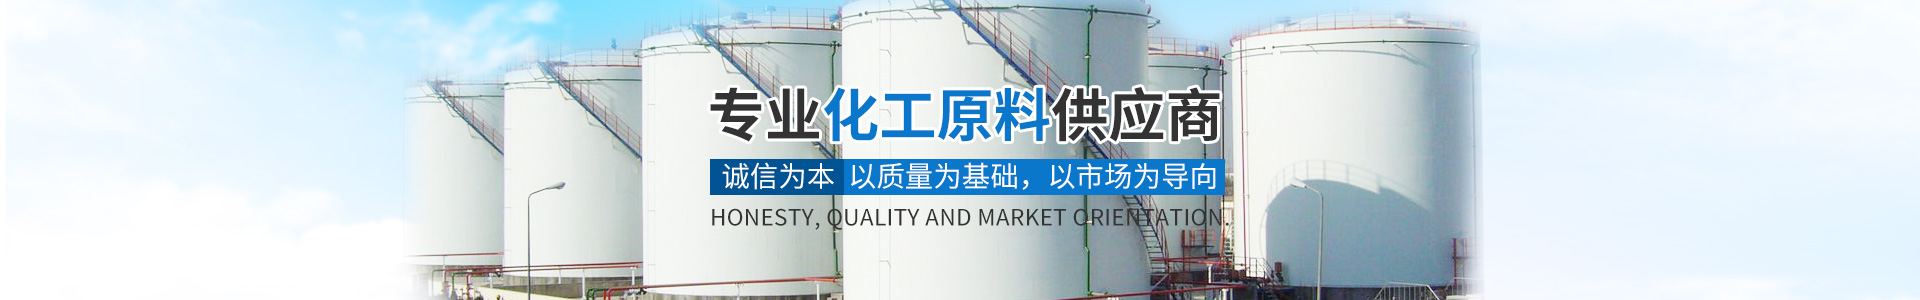 湖南(nán)穩誠貿易有限公司_化工(gōng)原料銷售|化學溶劑|建築化工(gōng)材料銷售|金屬加工(gōng)液|環保材料銷售